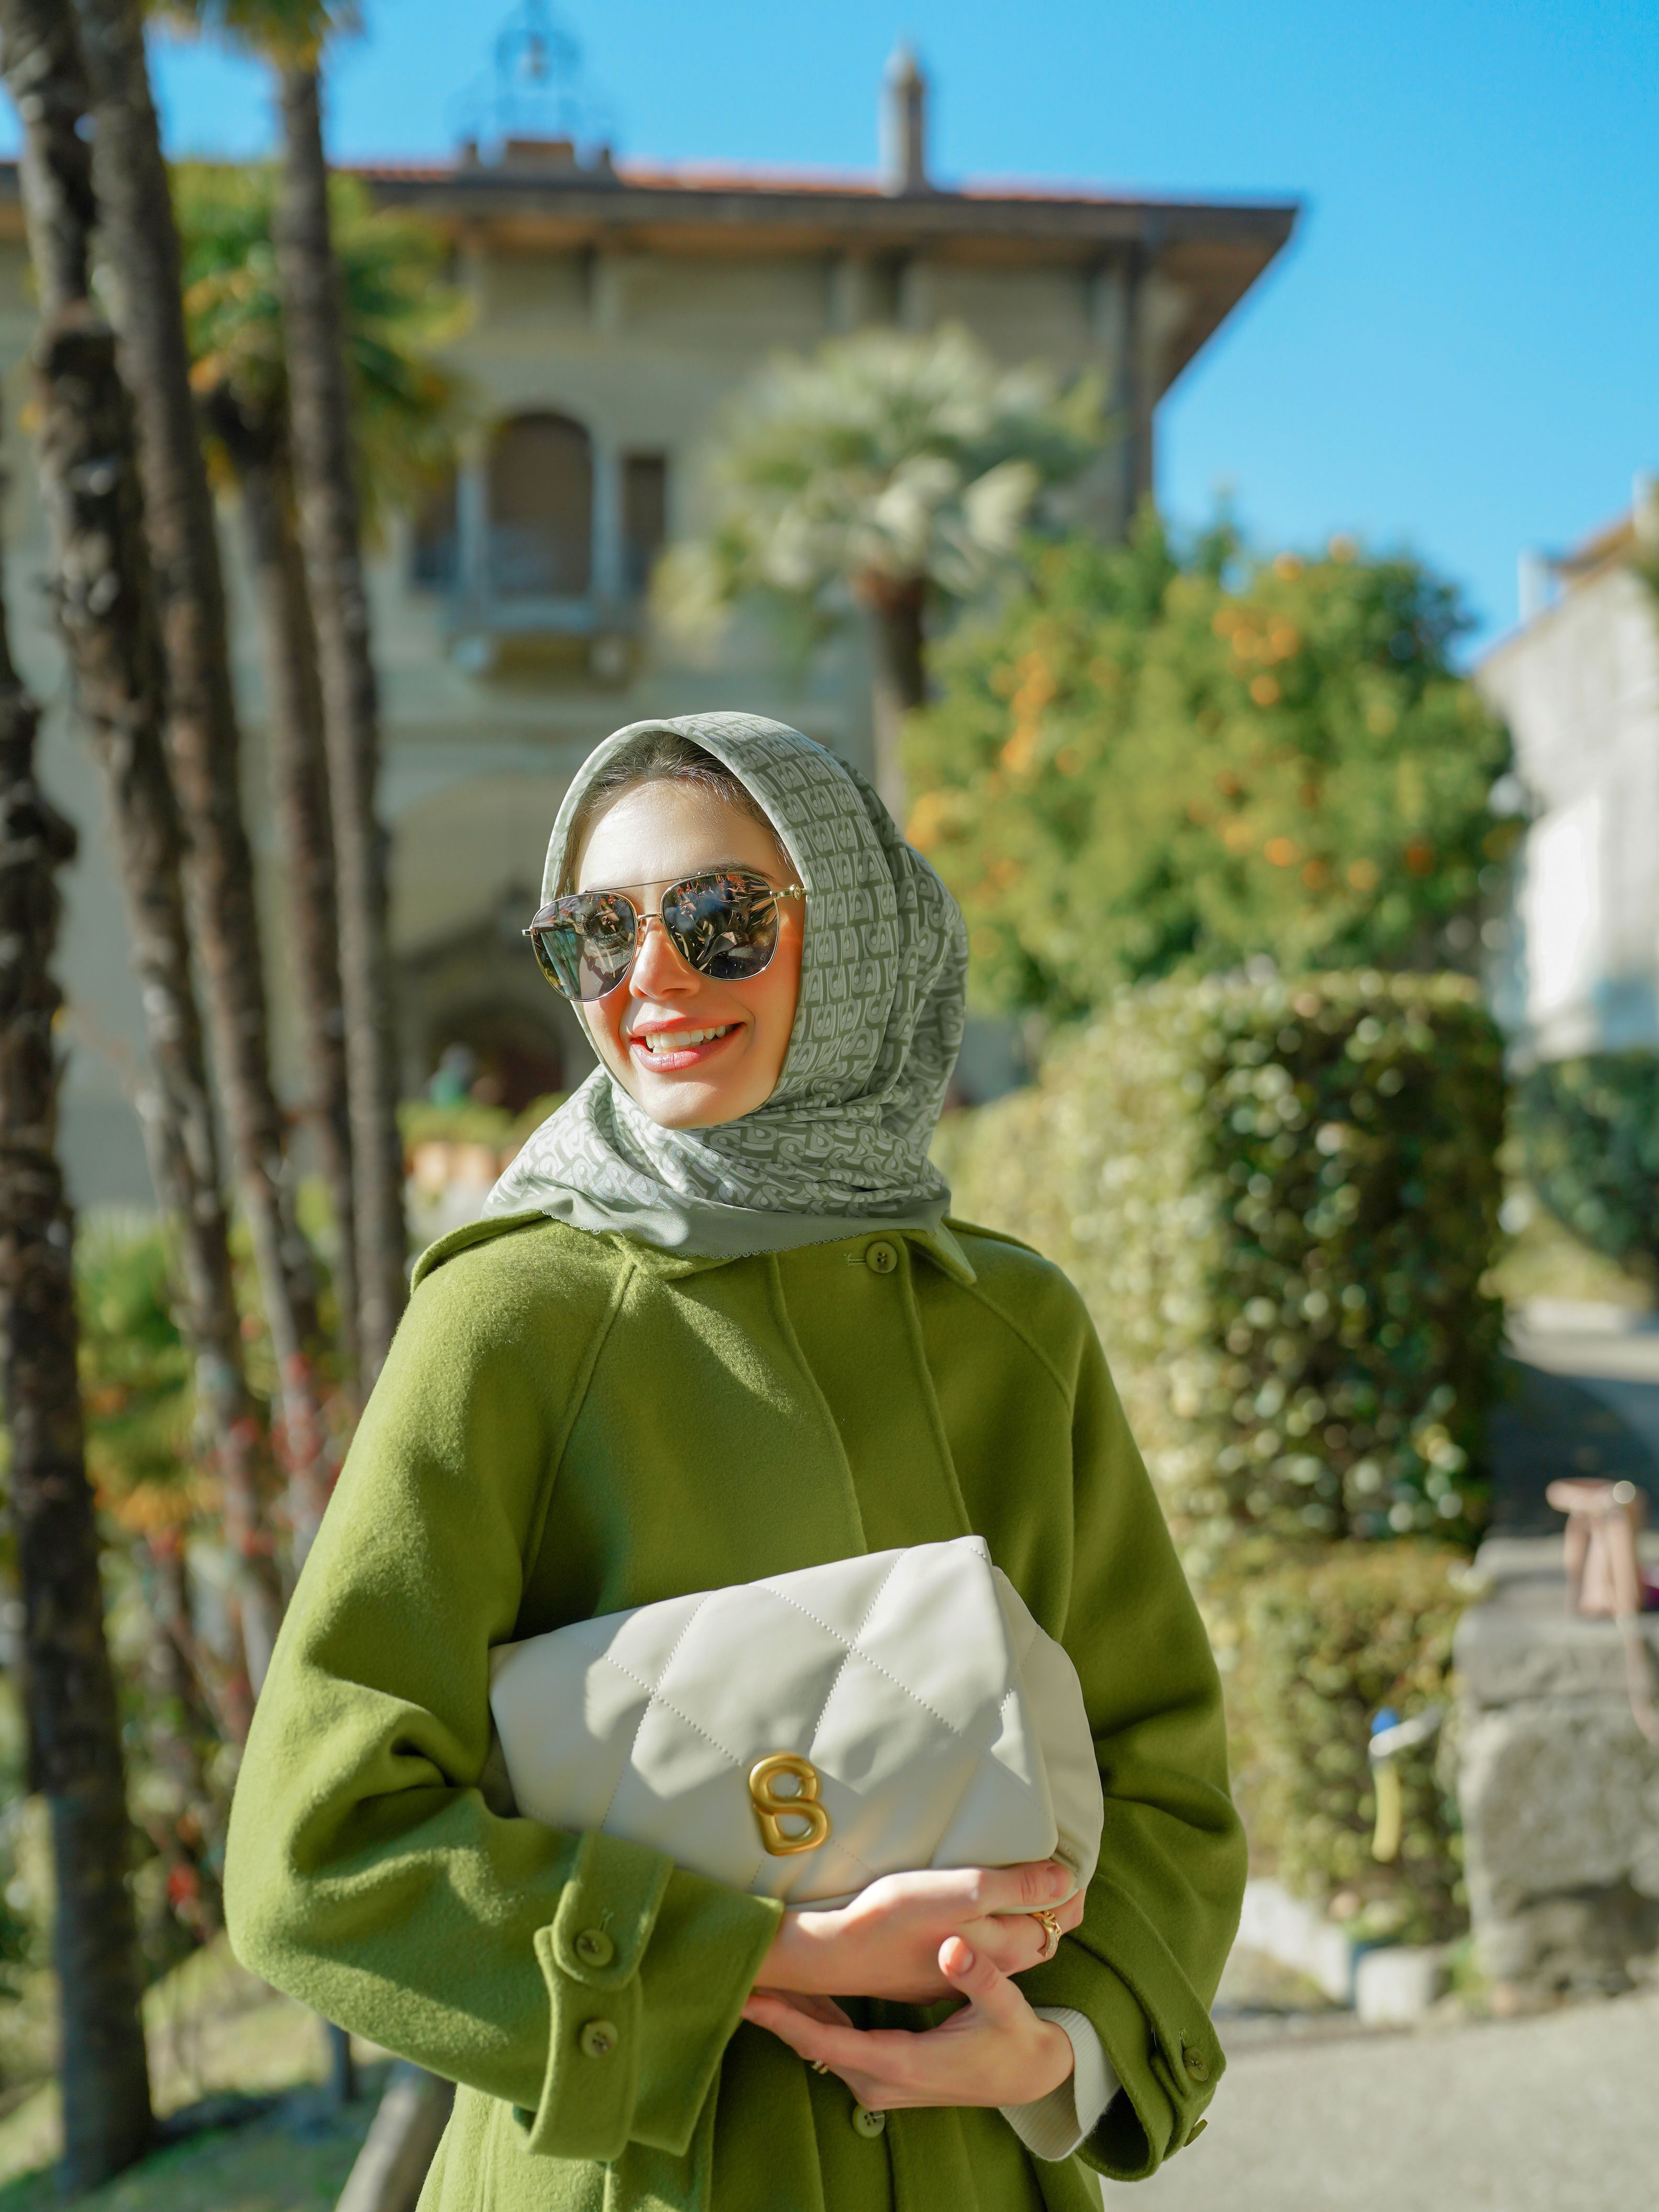 Koleksi Bimu Monogram, Hadirkan Hijab Bermotif Unik dan Versatile